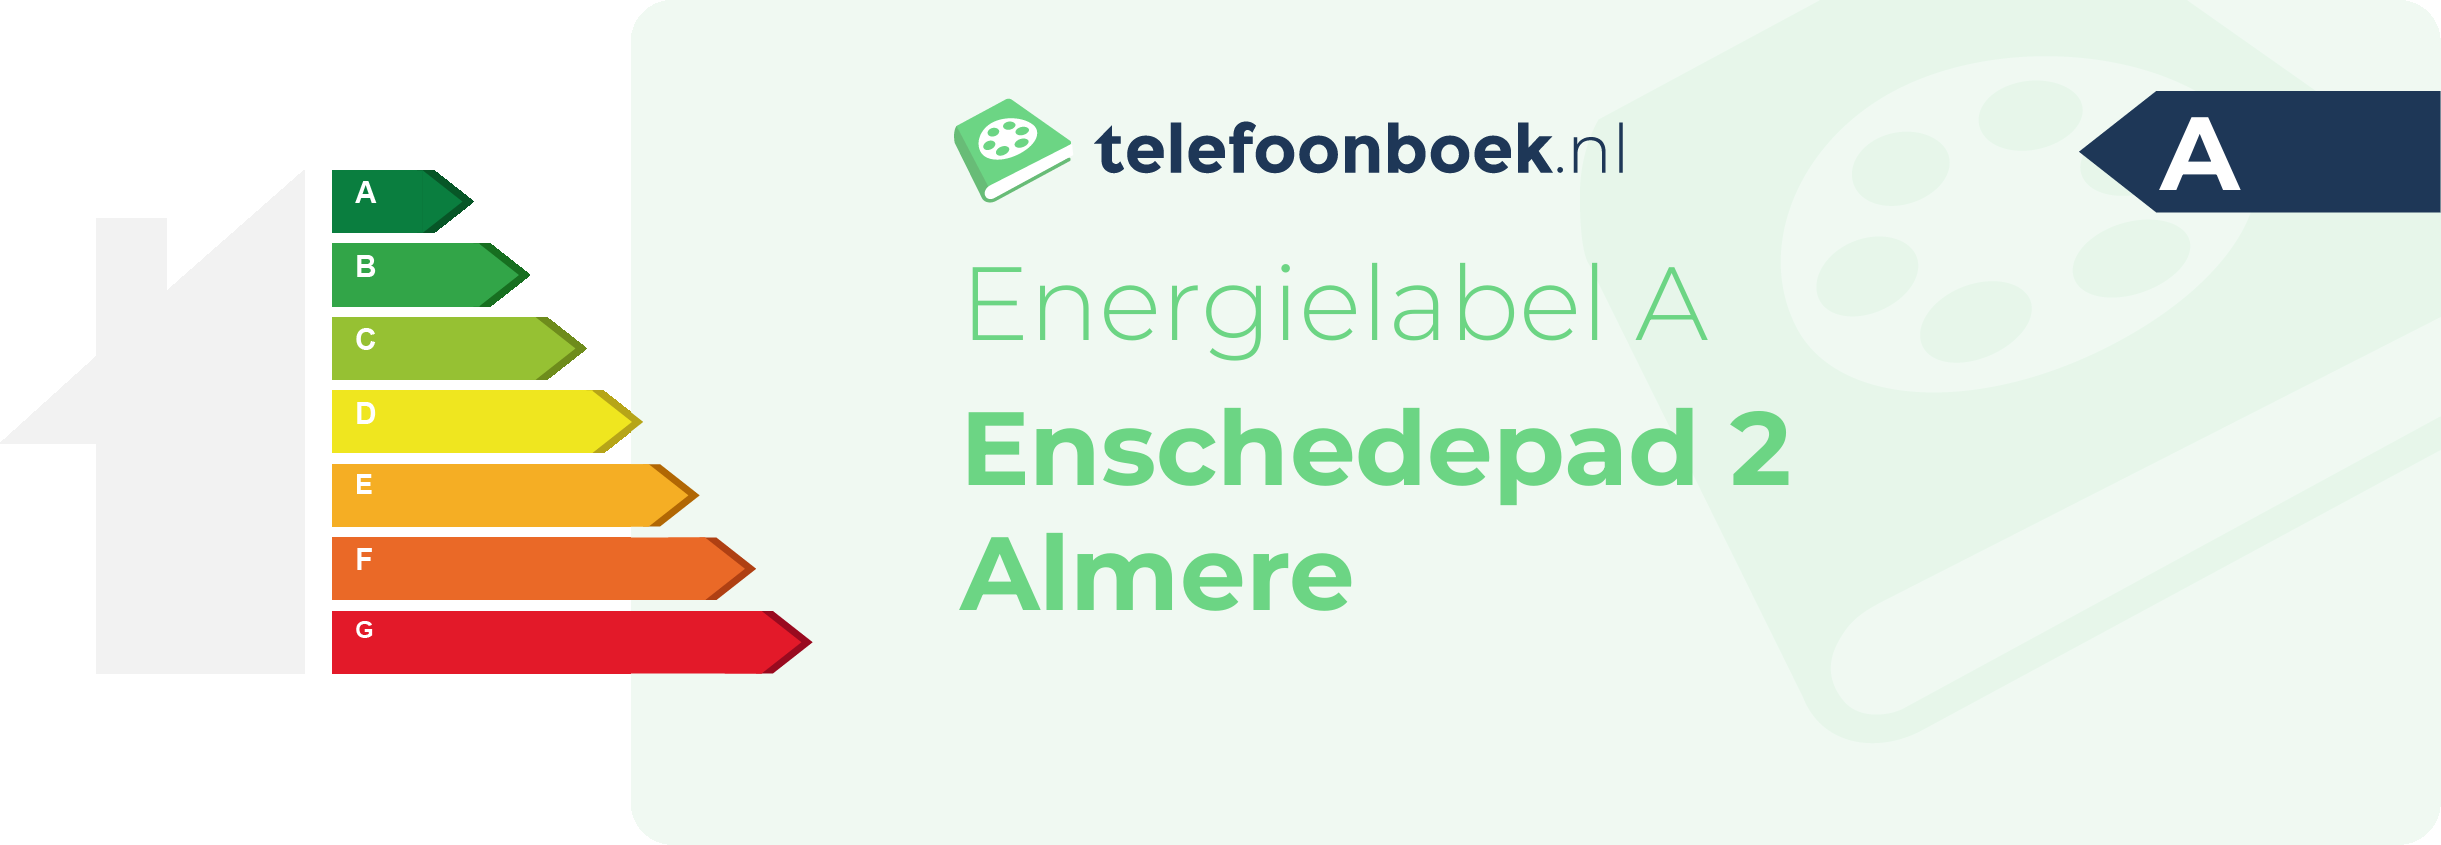 Energielabel Enschedepad 2 Almere